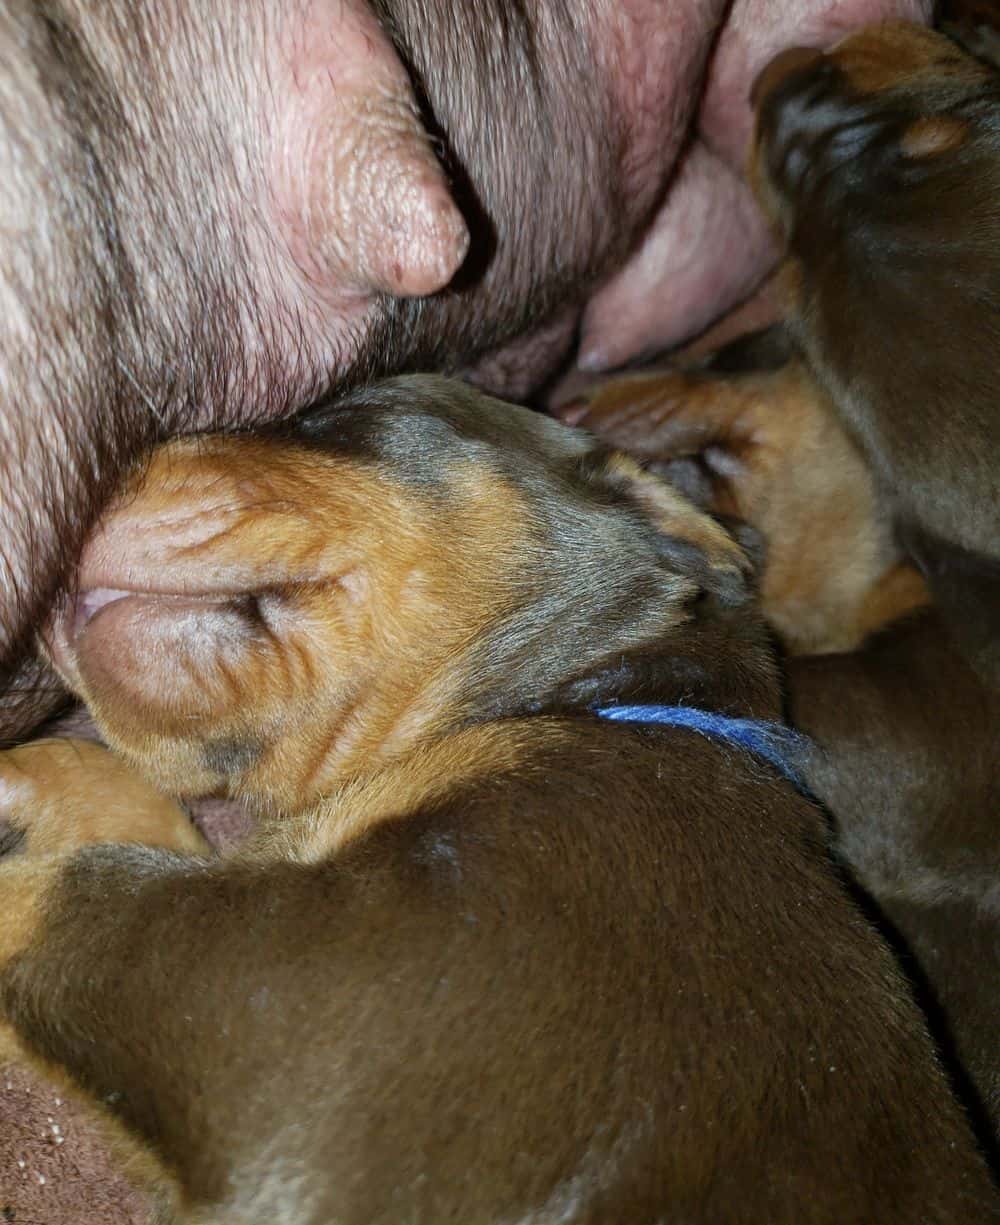 Doberman puppies at 2 weeks old